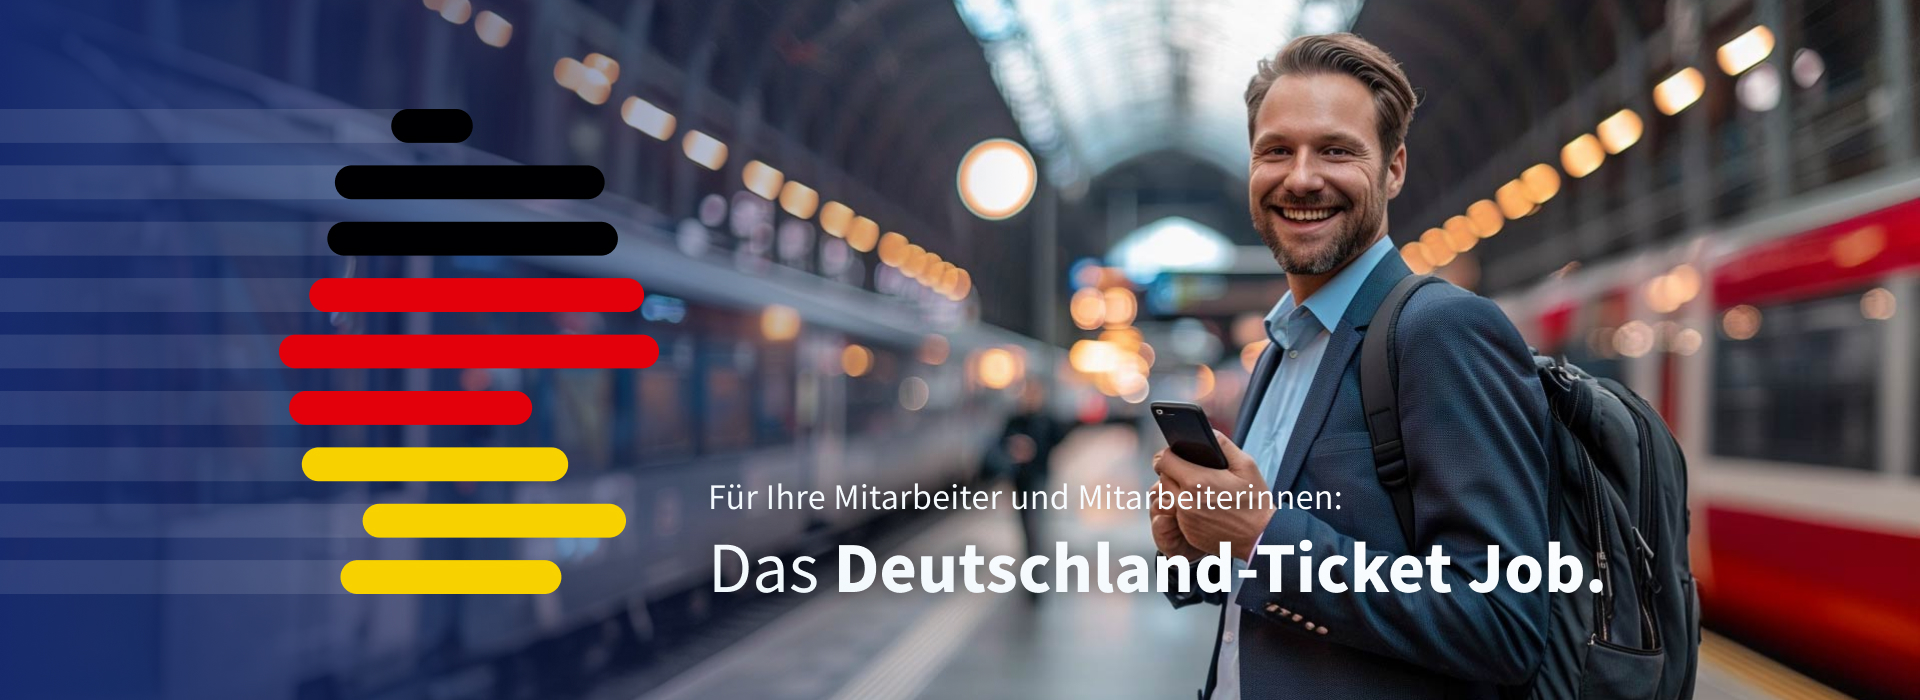 Ein Mann mit Handy steht an einem Bahnsteig, neben ihm das Deutschland-Ticket Job Logo. Darunter der Text "Für Ihre Mitarbaiter - das Deutschland-Ticket Job"